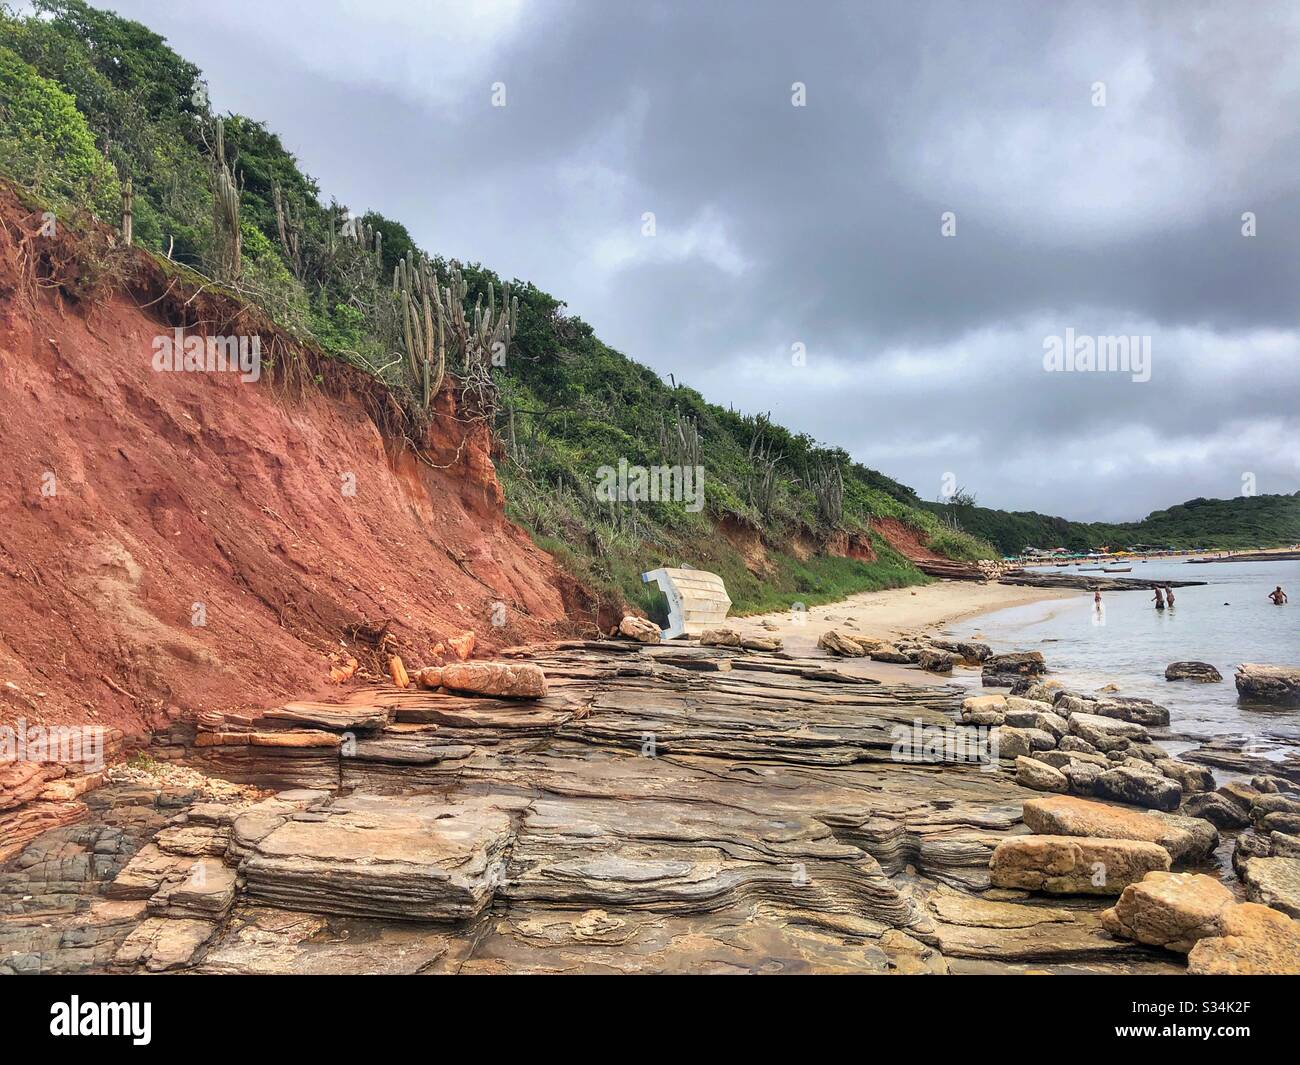 A rocky shoreline at a beach in Buzios, Brazil. Stock Photo